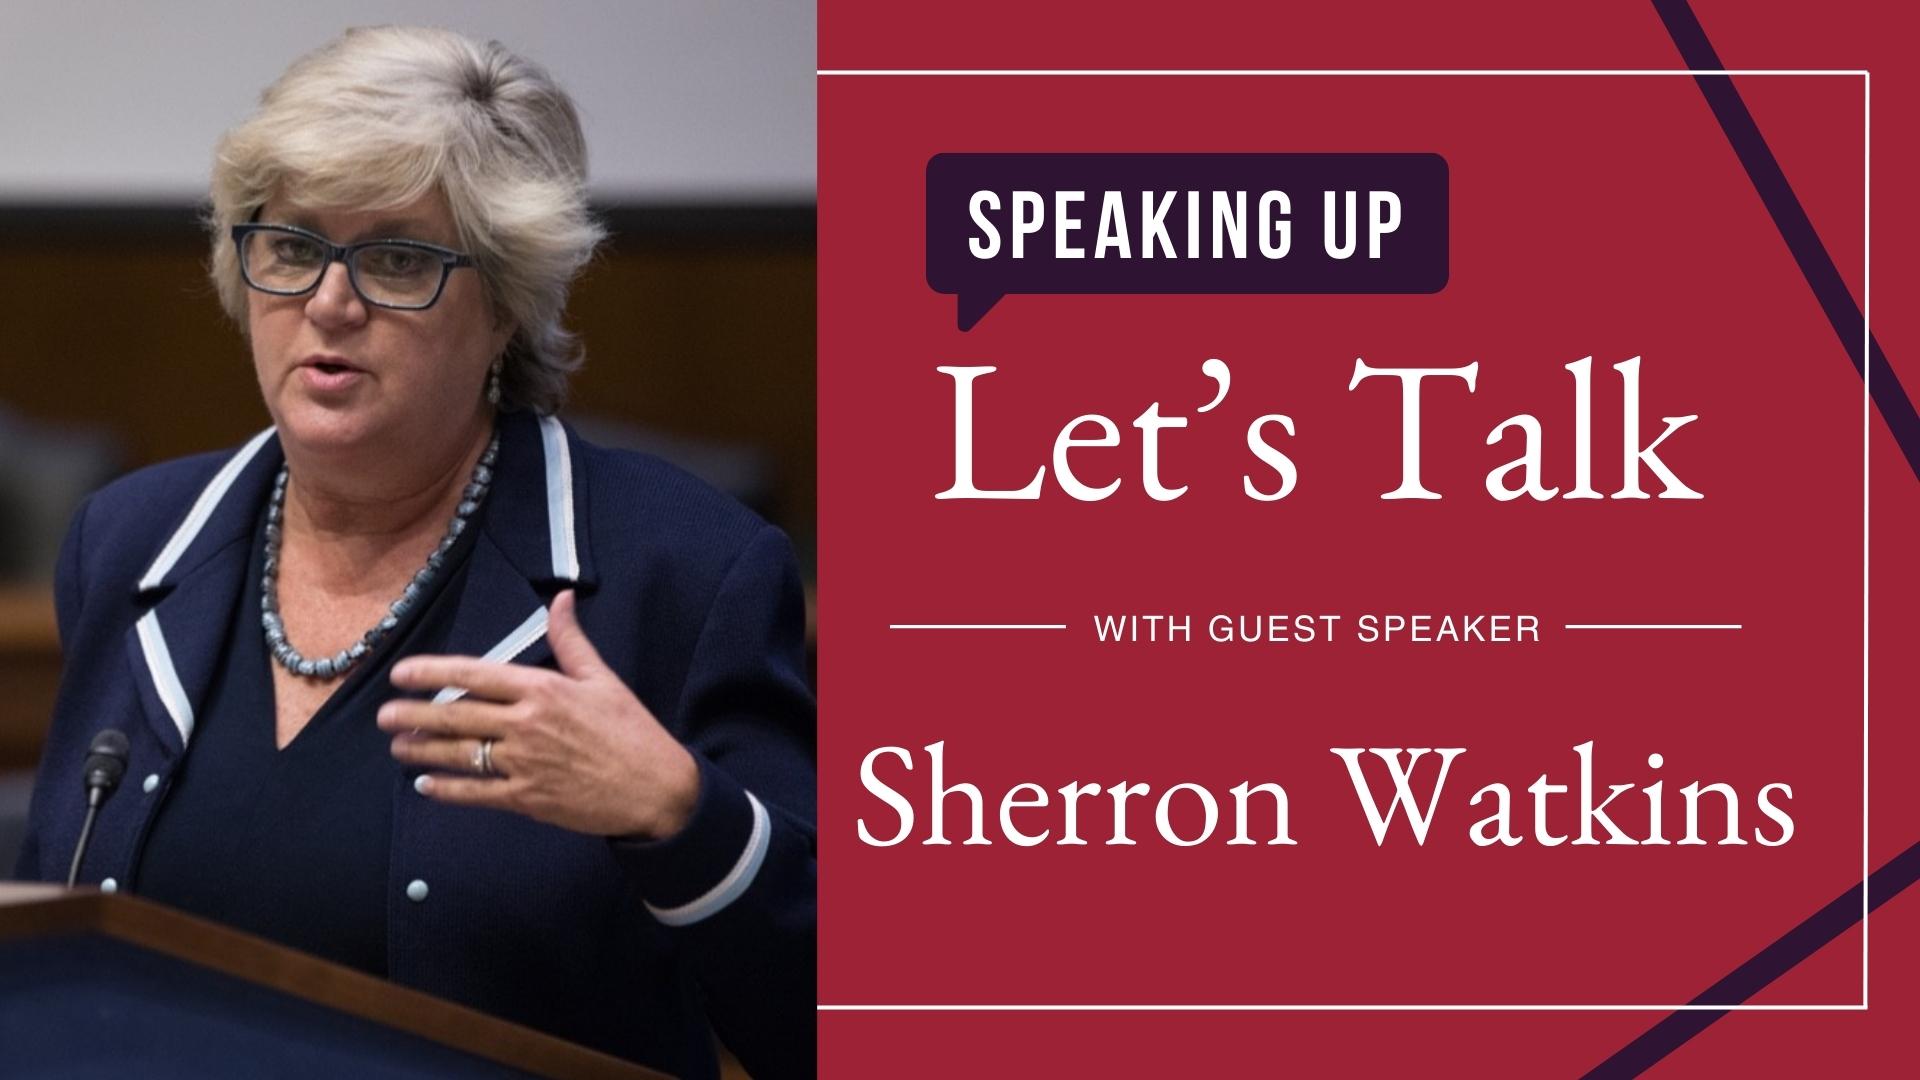 Sherron Watkins - Let's Talk about Speaking Up guest speaker